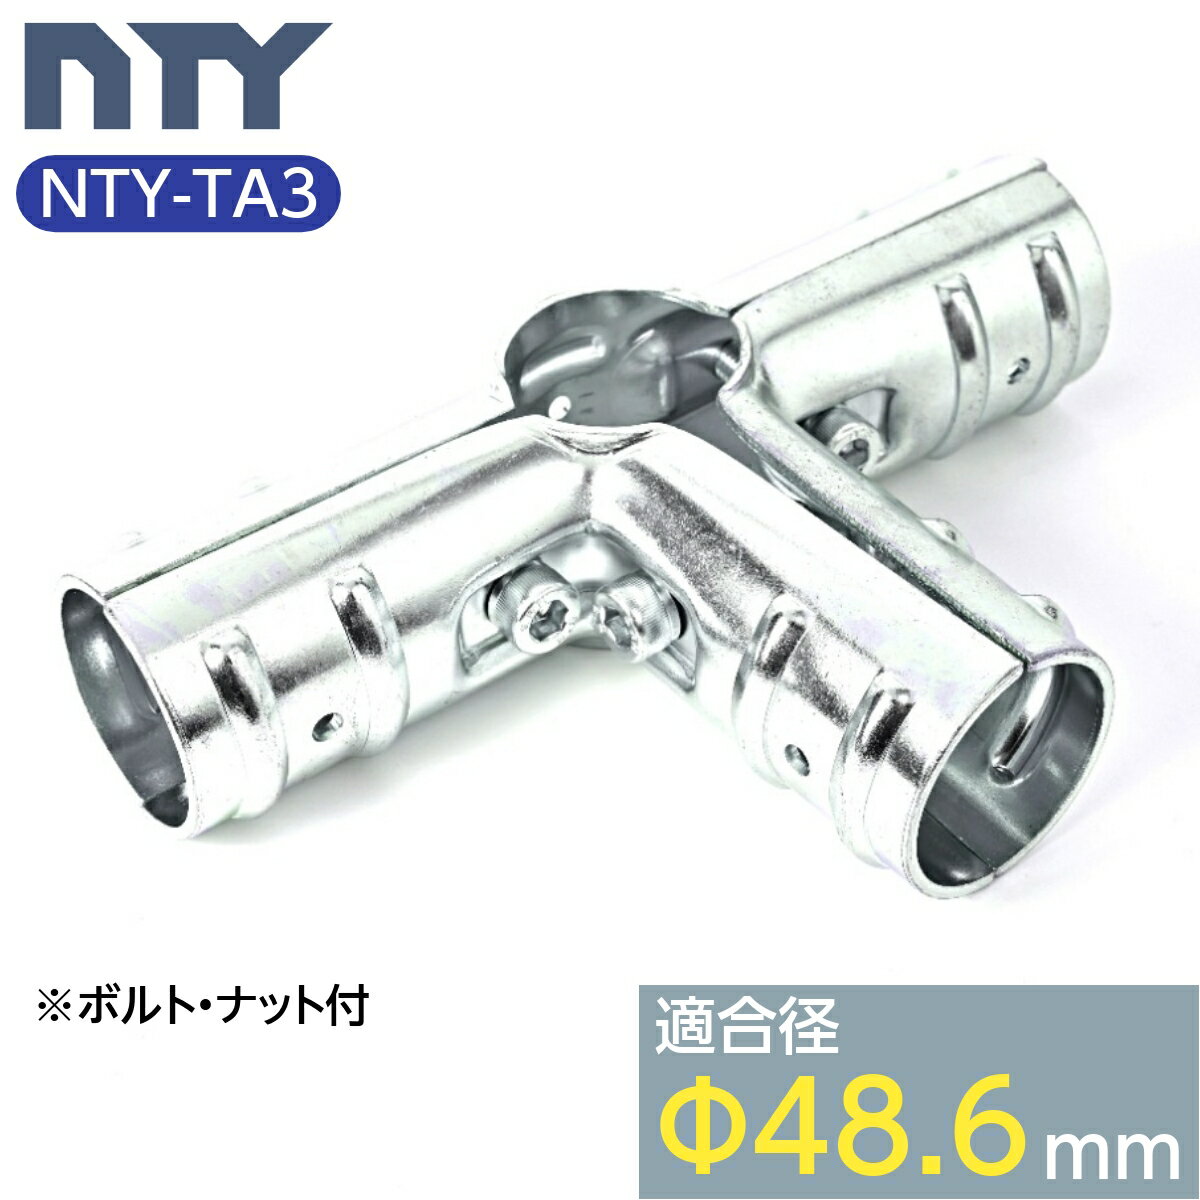 単管パイプ ジョイント NTY-TA3 Φ48.6mm用 単管 パイプ クランプ 単管接続金具 ジョイント 小屋 倉庫 DIY